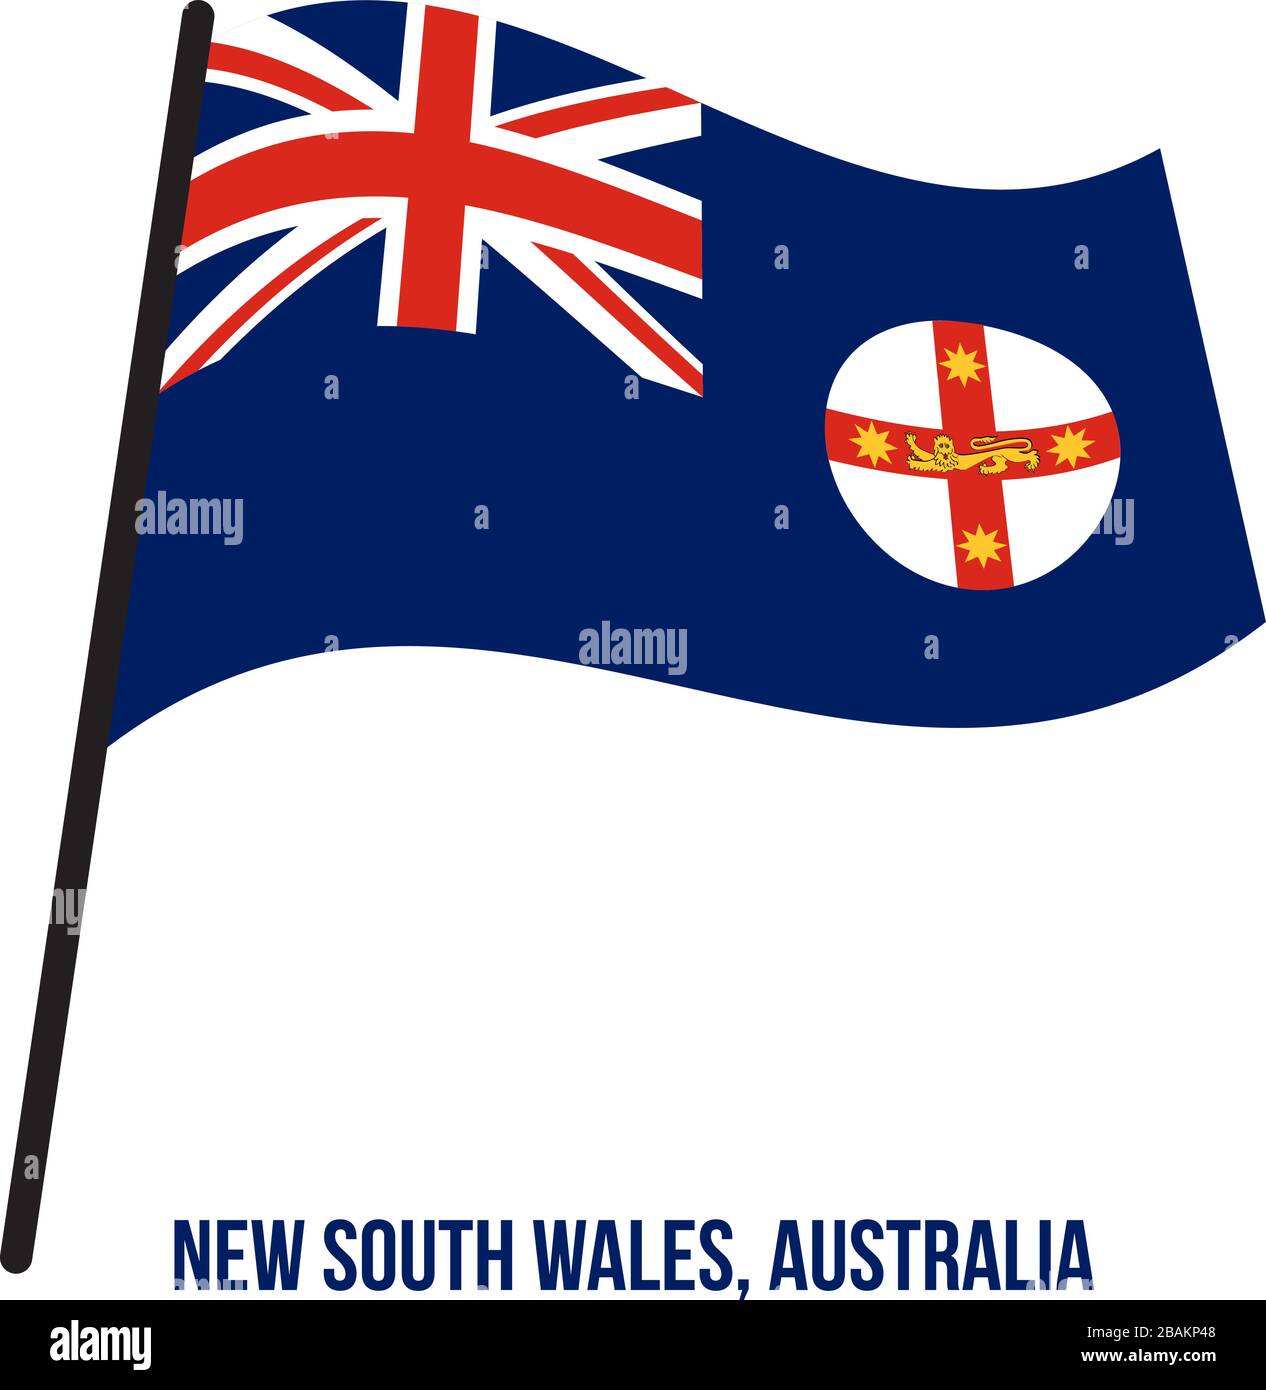 Nuovo Galles del Sud (NSW) bandiera sventola illustrazione vettoriale su sfondo bianco. Membri bandiera dell'Australia. Illustrazione Vettoriale